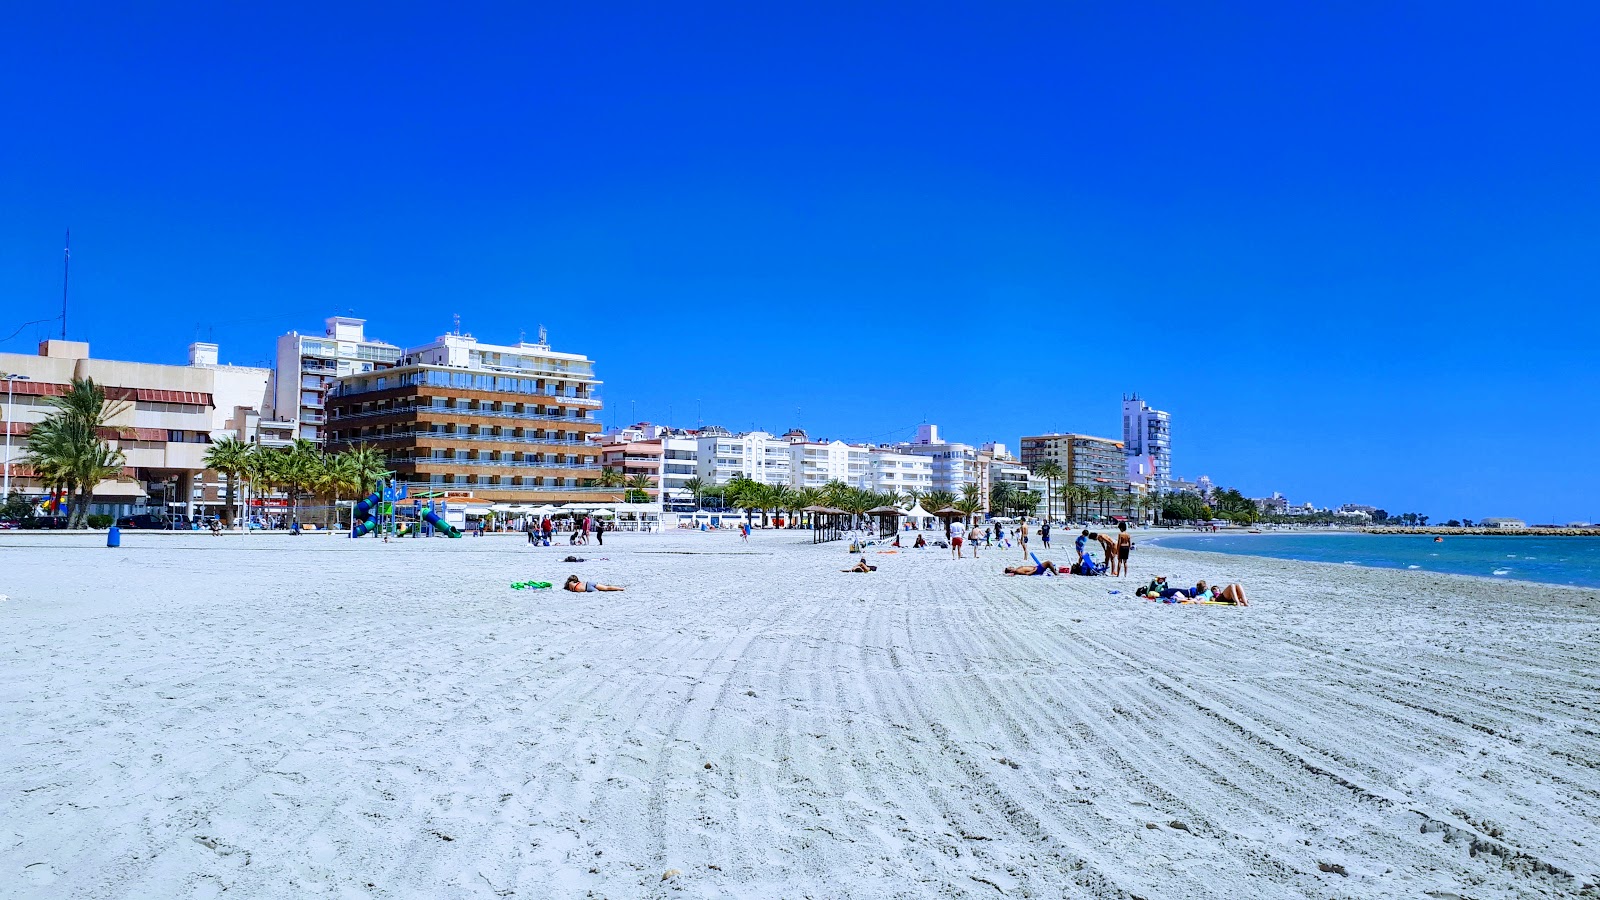 Beach Santa Pola 2'in fotoğrafı - rahatlamayı sevenler arasında popüler bir yer